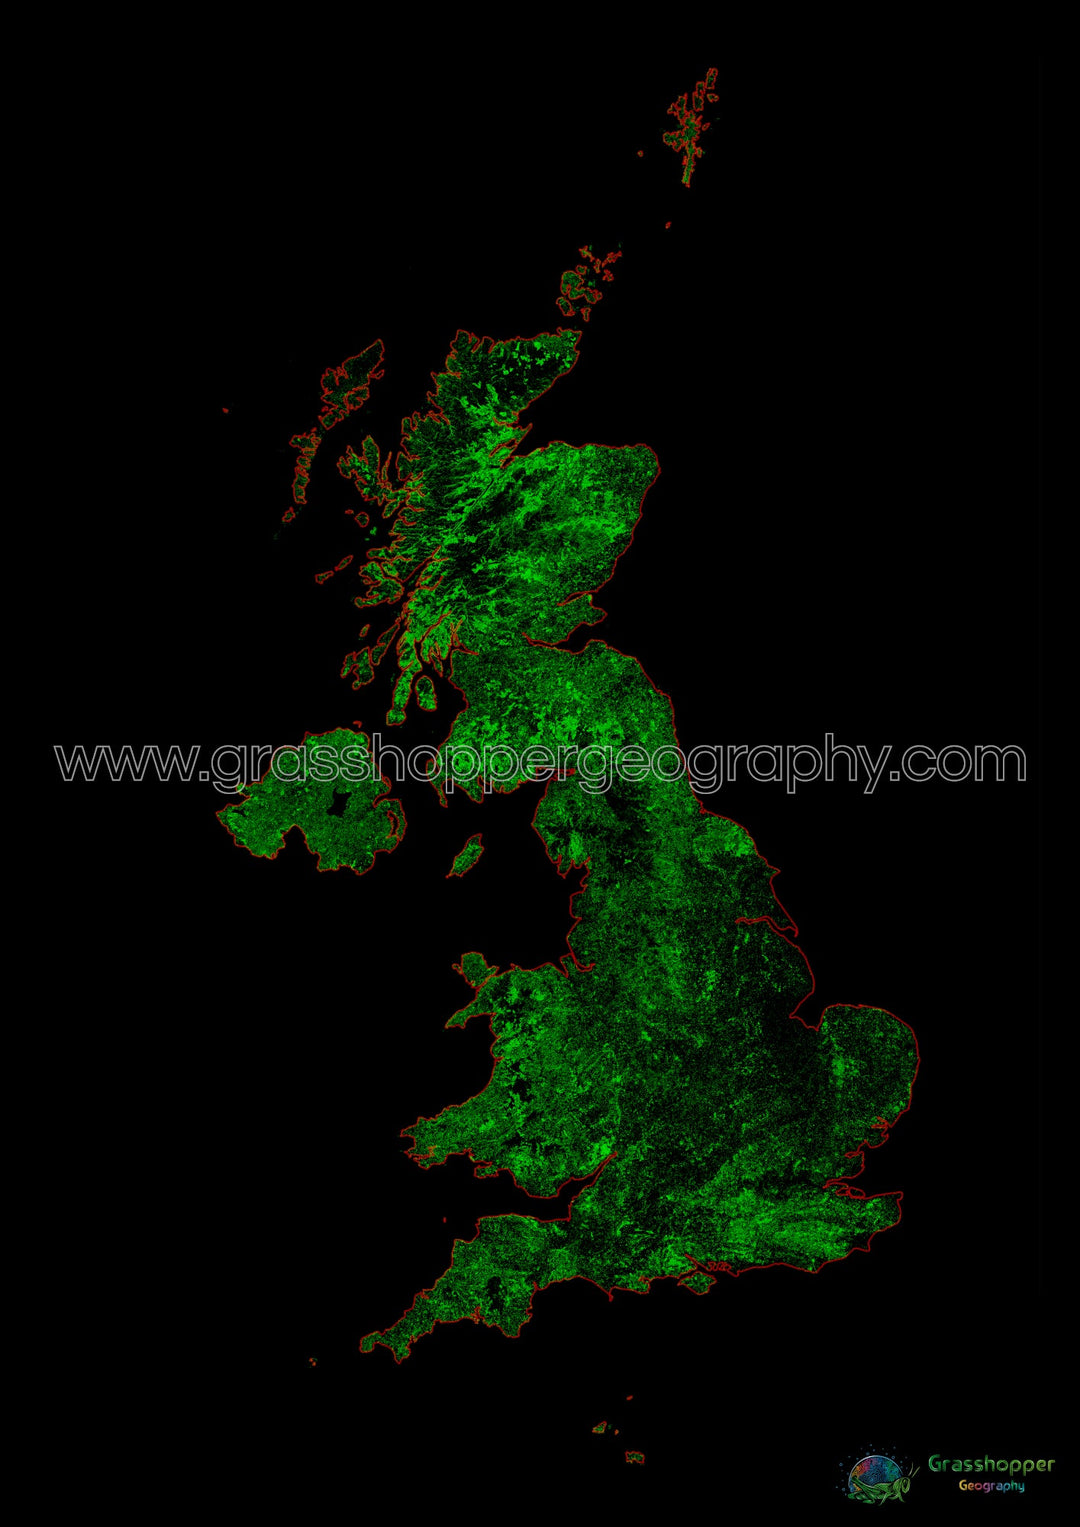 Royaume-Uni - Carte du couvert forestier - Tirage d'art